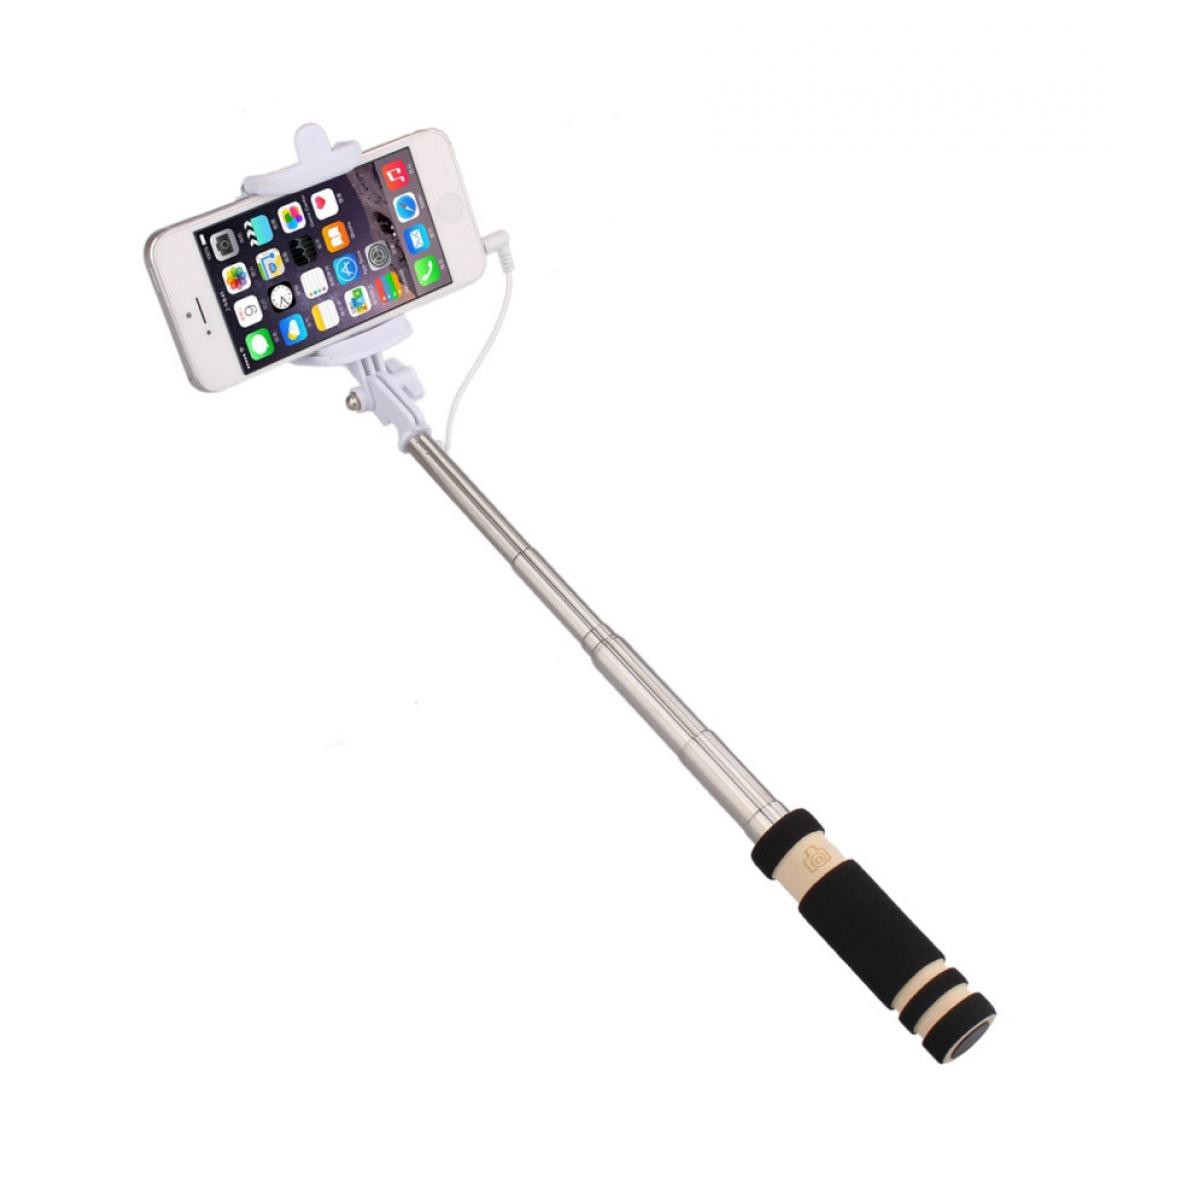 Shot - Mini Perche Selfie pour SONY Xperia L4 Smartphone avec Cable Jack Selfie Stick Android IOS Reglable Bouton Photo (NOIR) - Autres accessoires smartphone